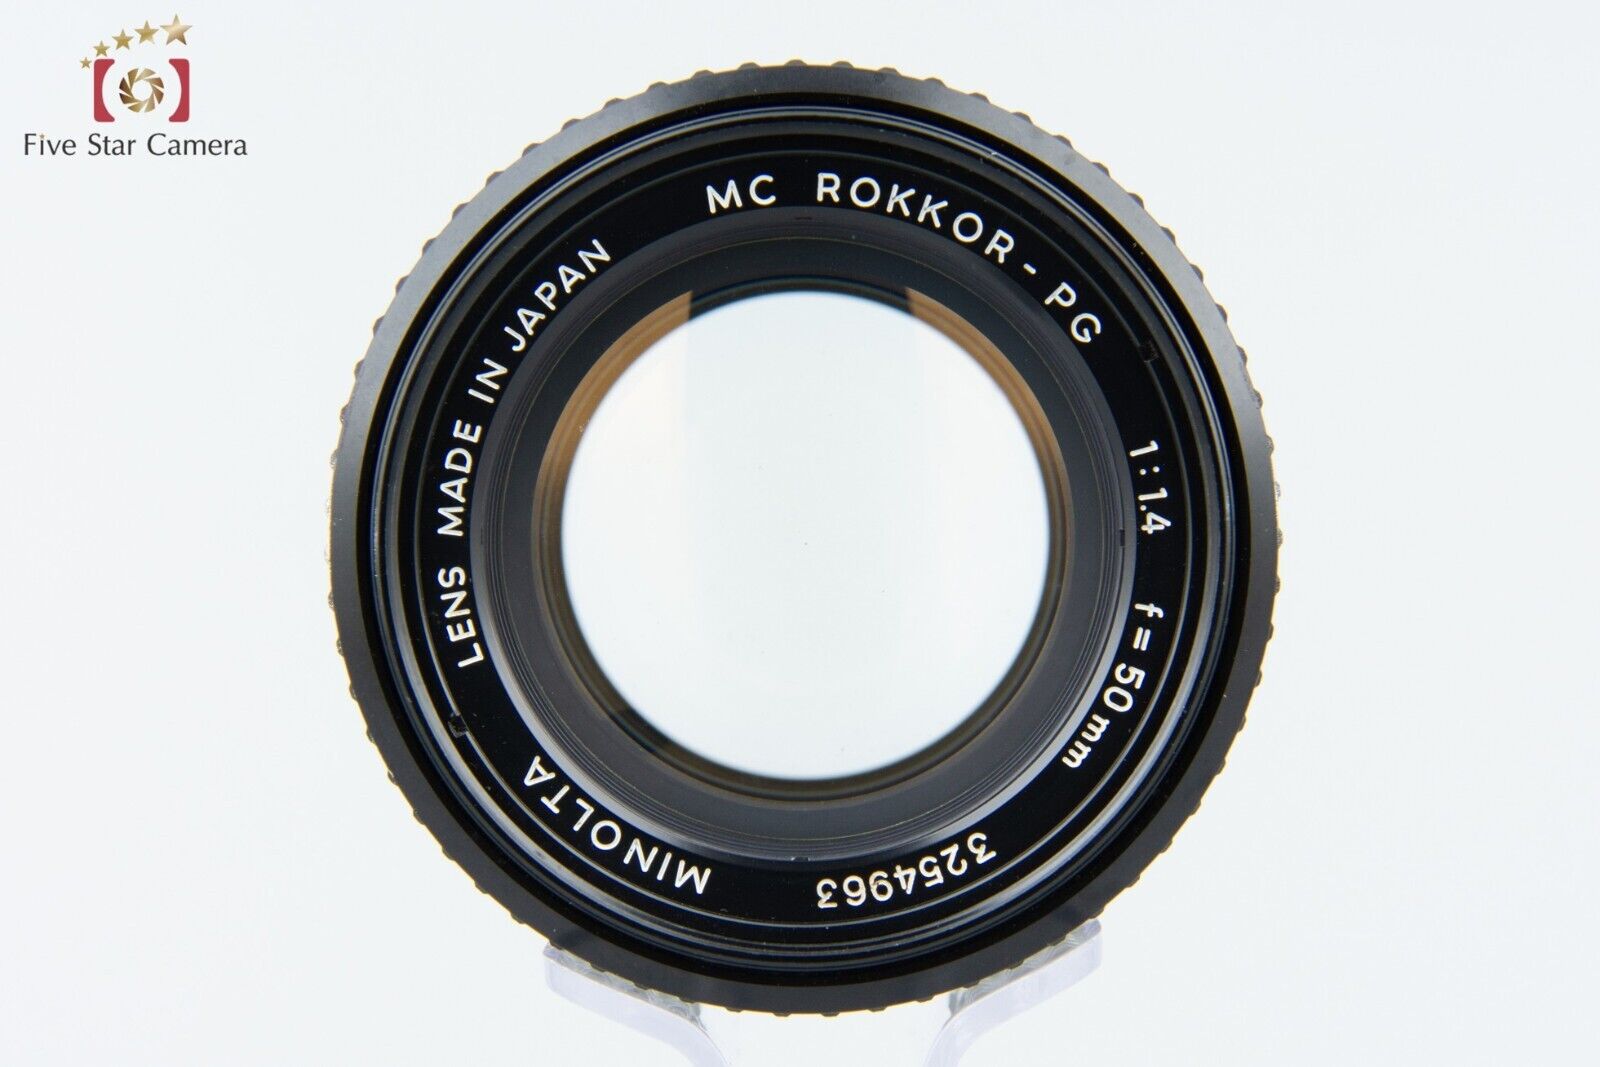 Minolta MC ROKKOR-PG 50mm f/1.4